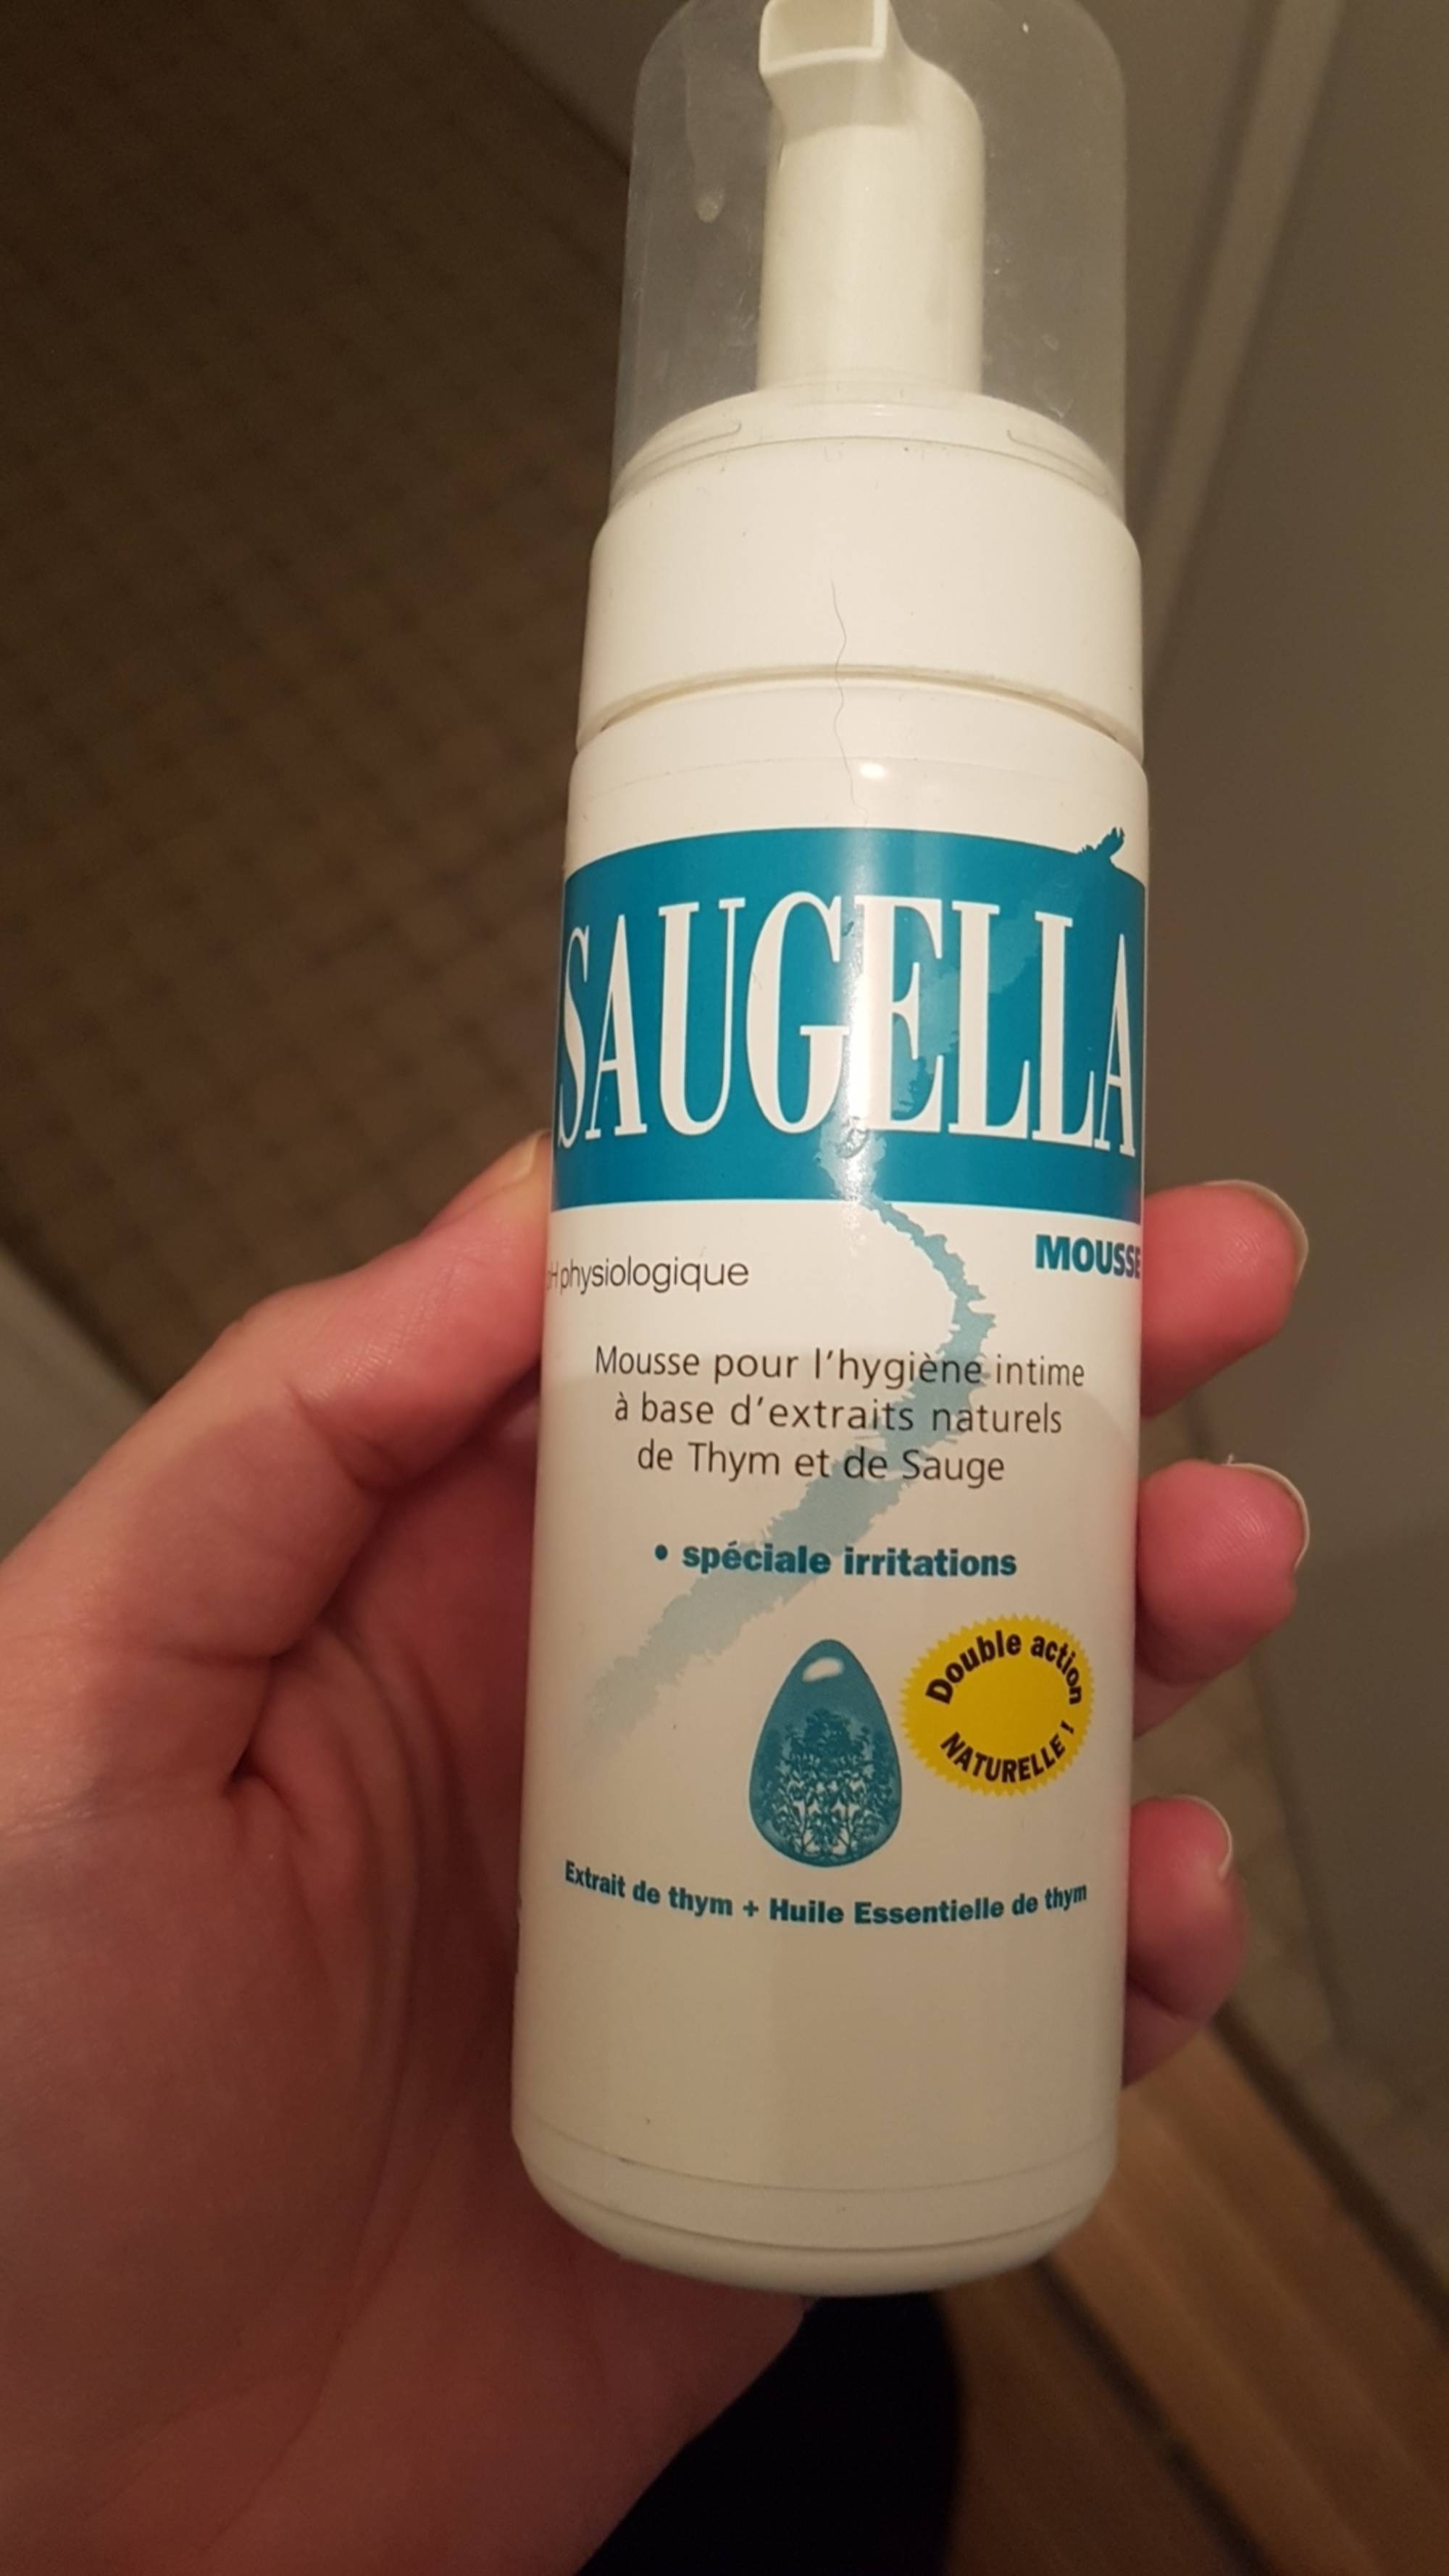 SAUGELLA - Mousse pour l'hygiène intime